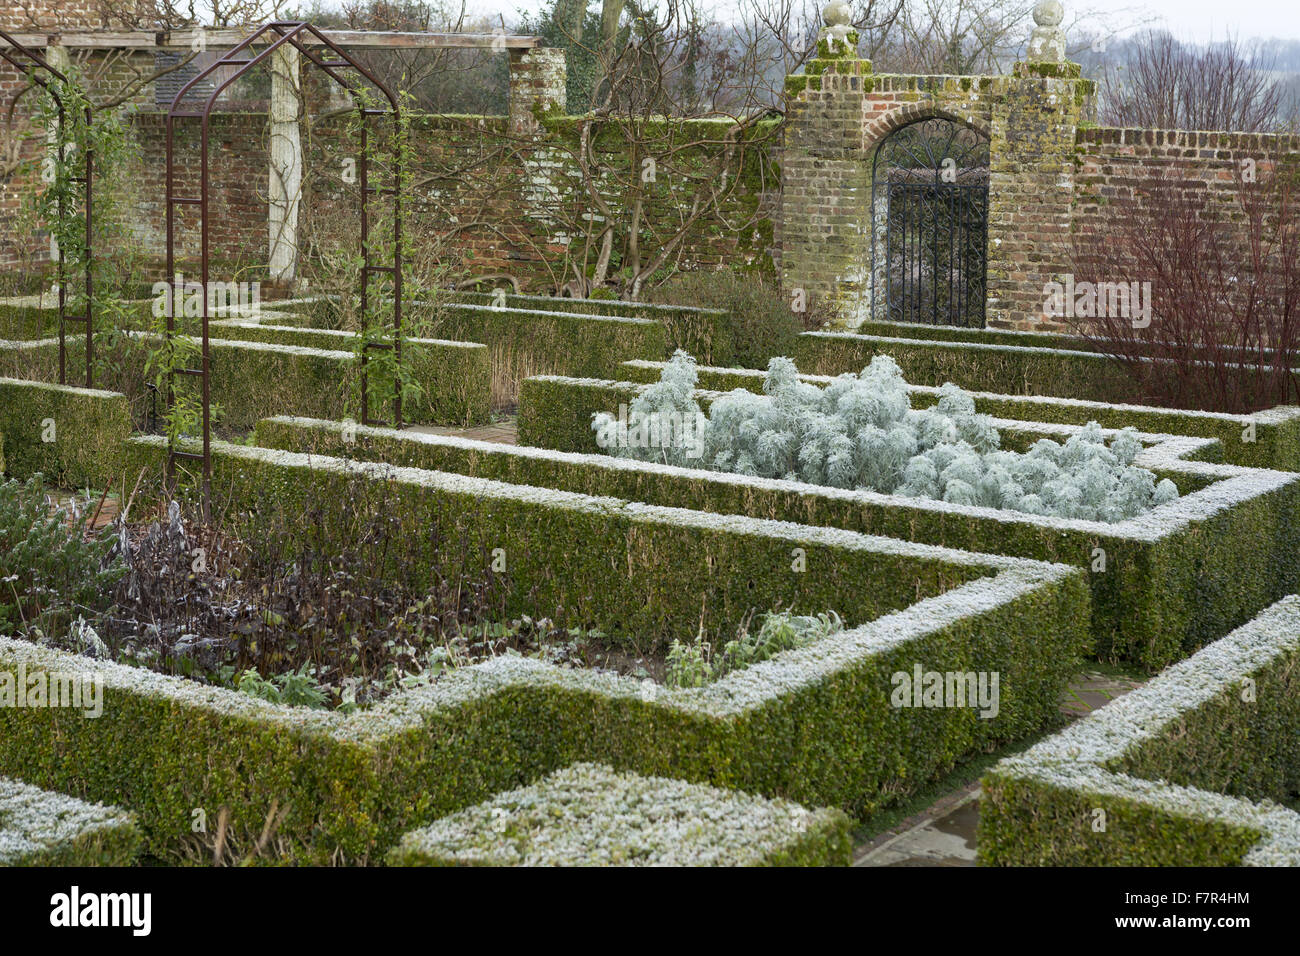 Una giornata invernale e nel bianco Garden presso il castello di Sissinghurst, Kent. Vita Sackville-West e Harold Nicolson ha creato un famoso Giardino di Sissinghurst, che abbraccia ogni stagione. Foto Stock